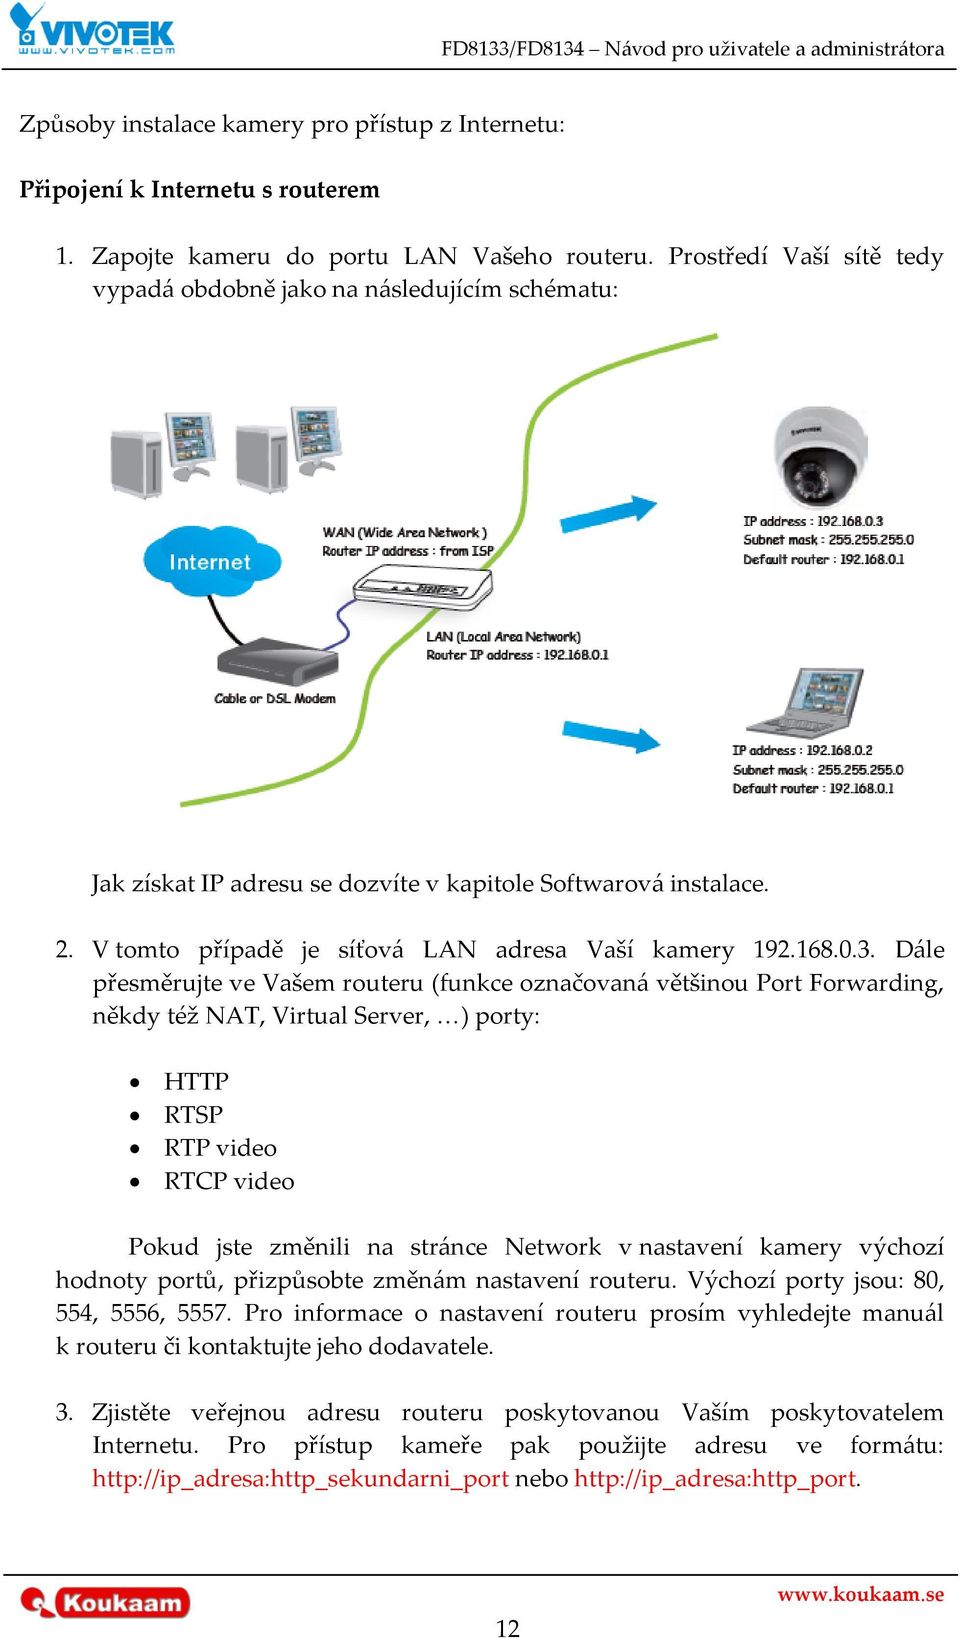 D{le přesměrujte ve Vašem routeru (funkce označovan{ většinou Port Forwarding, někdy též NAT, Virtual Server, <) porty: HTTP RTSP RTP video RTCP video Pokud jste změnili na str{nce Network v